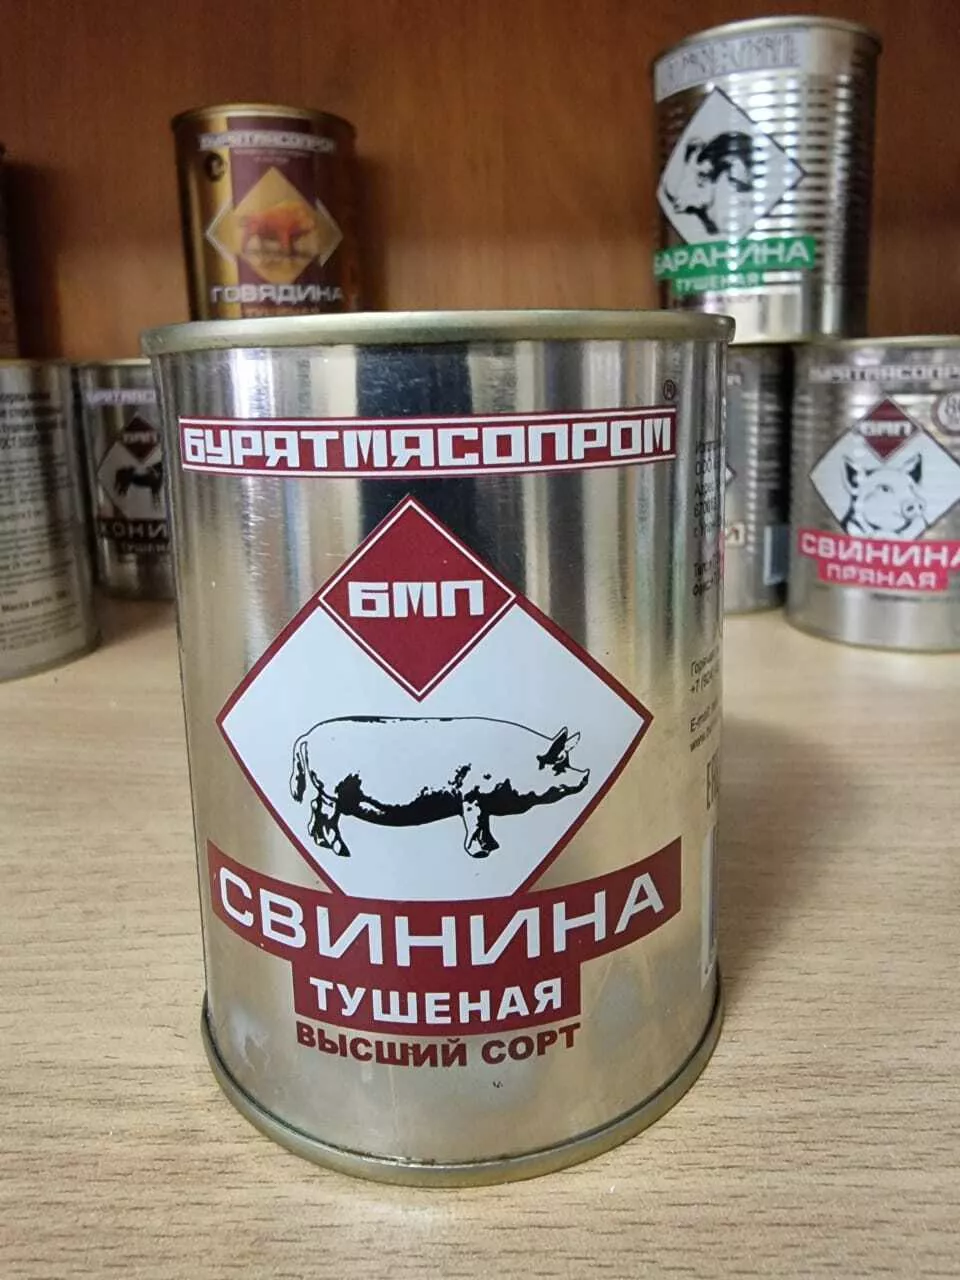 консервная продукция бурятмяспром в Барнауле 6